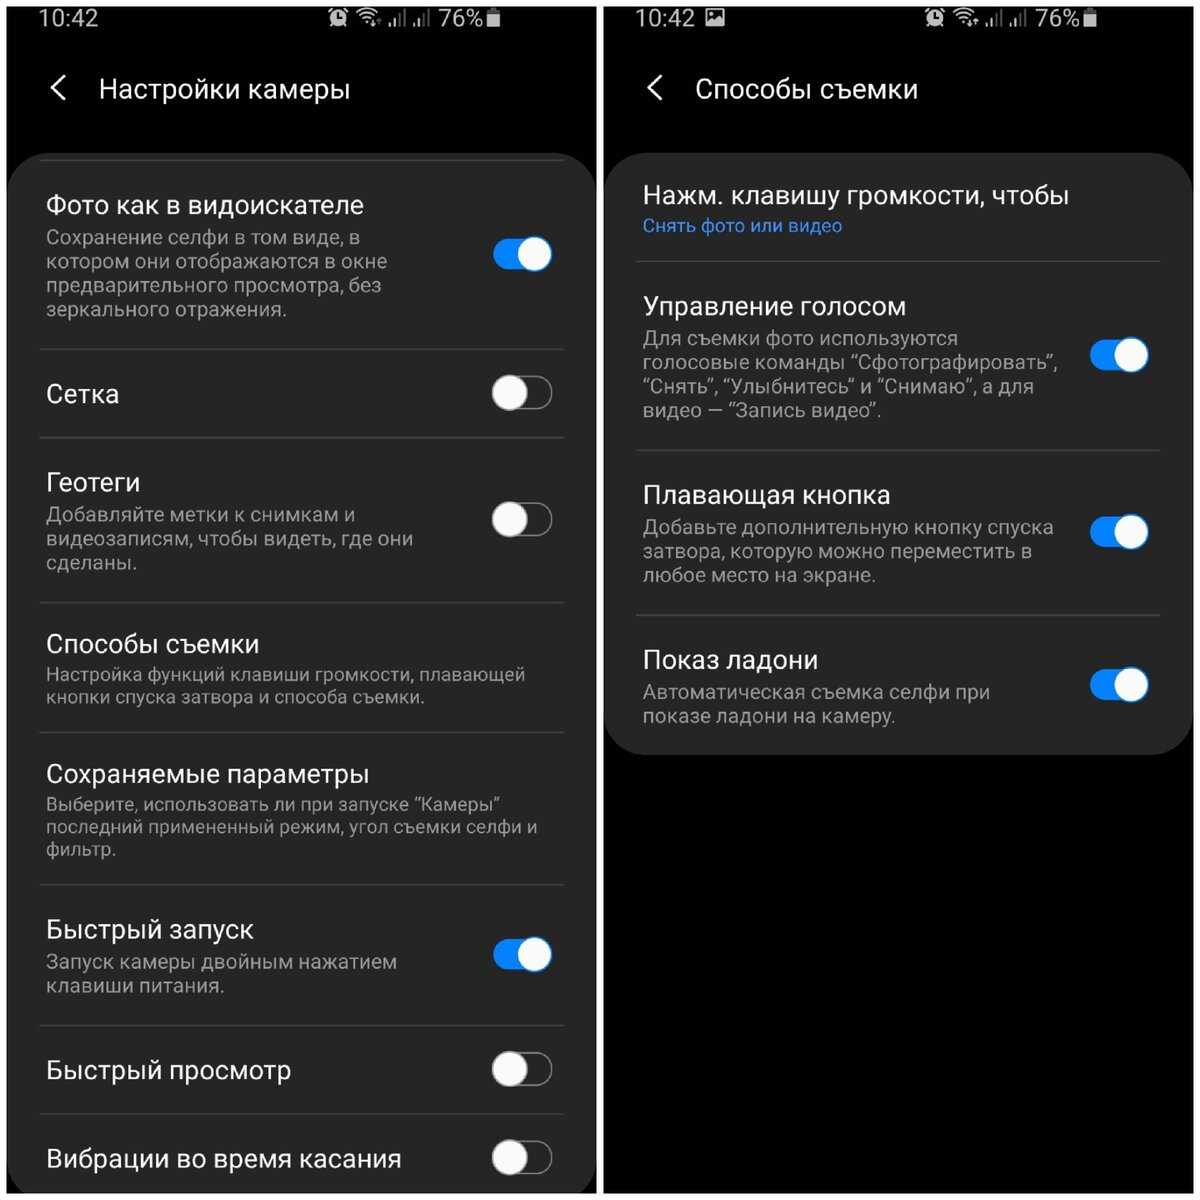 Как пользоваться телеграмм на телефоне пошаговая инструкция андроид на русском языке фото 62